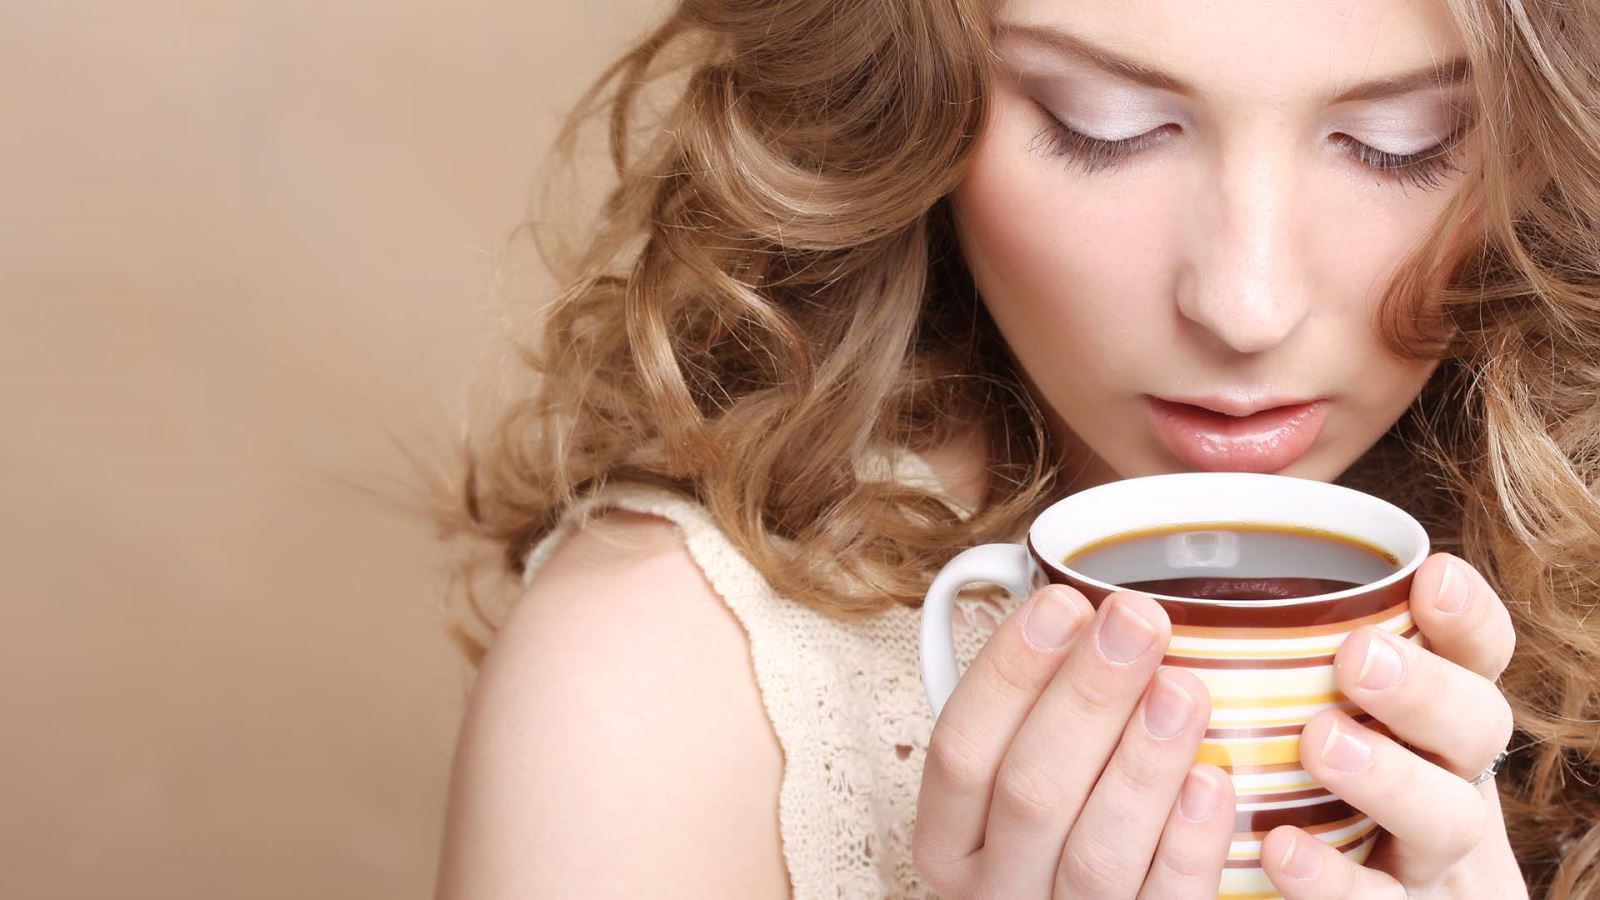 Uống trà long nhãn, táo đỏ, kỷ tử giúp tăng nhan sắc chị em phụ nữ